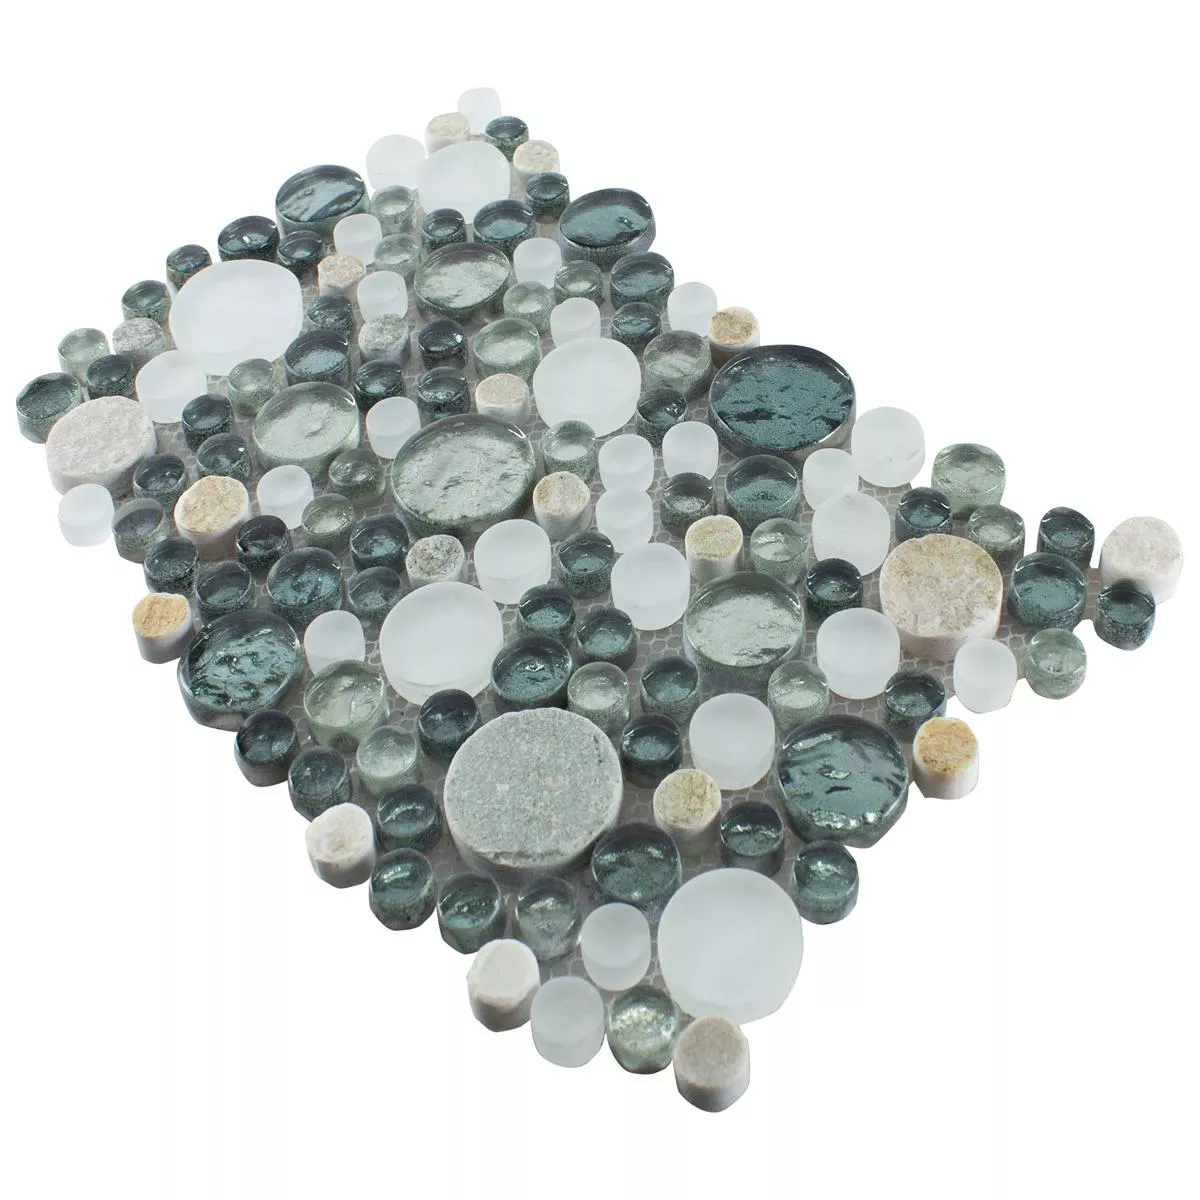 Glas Naturstein Mosaikfliesen Stonewater Grau Blau Mix